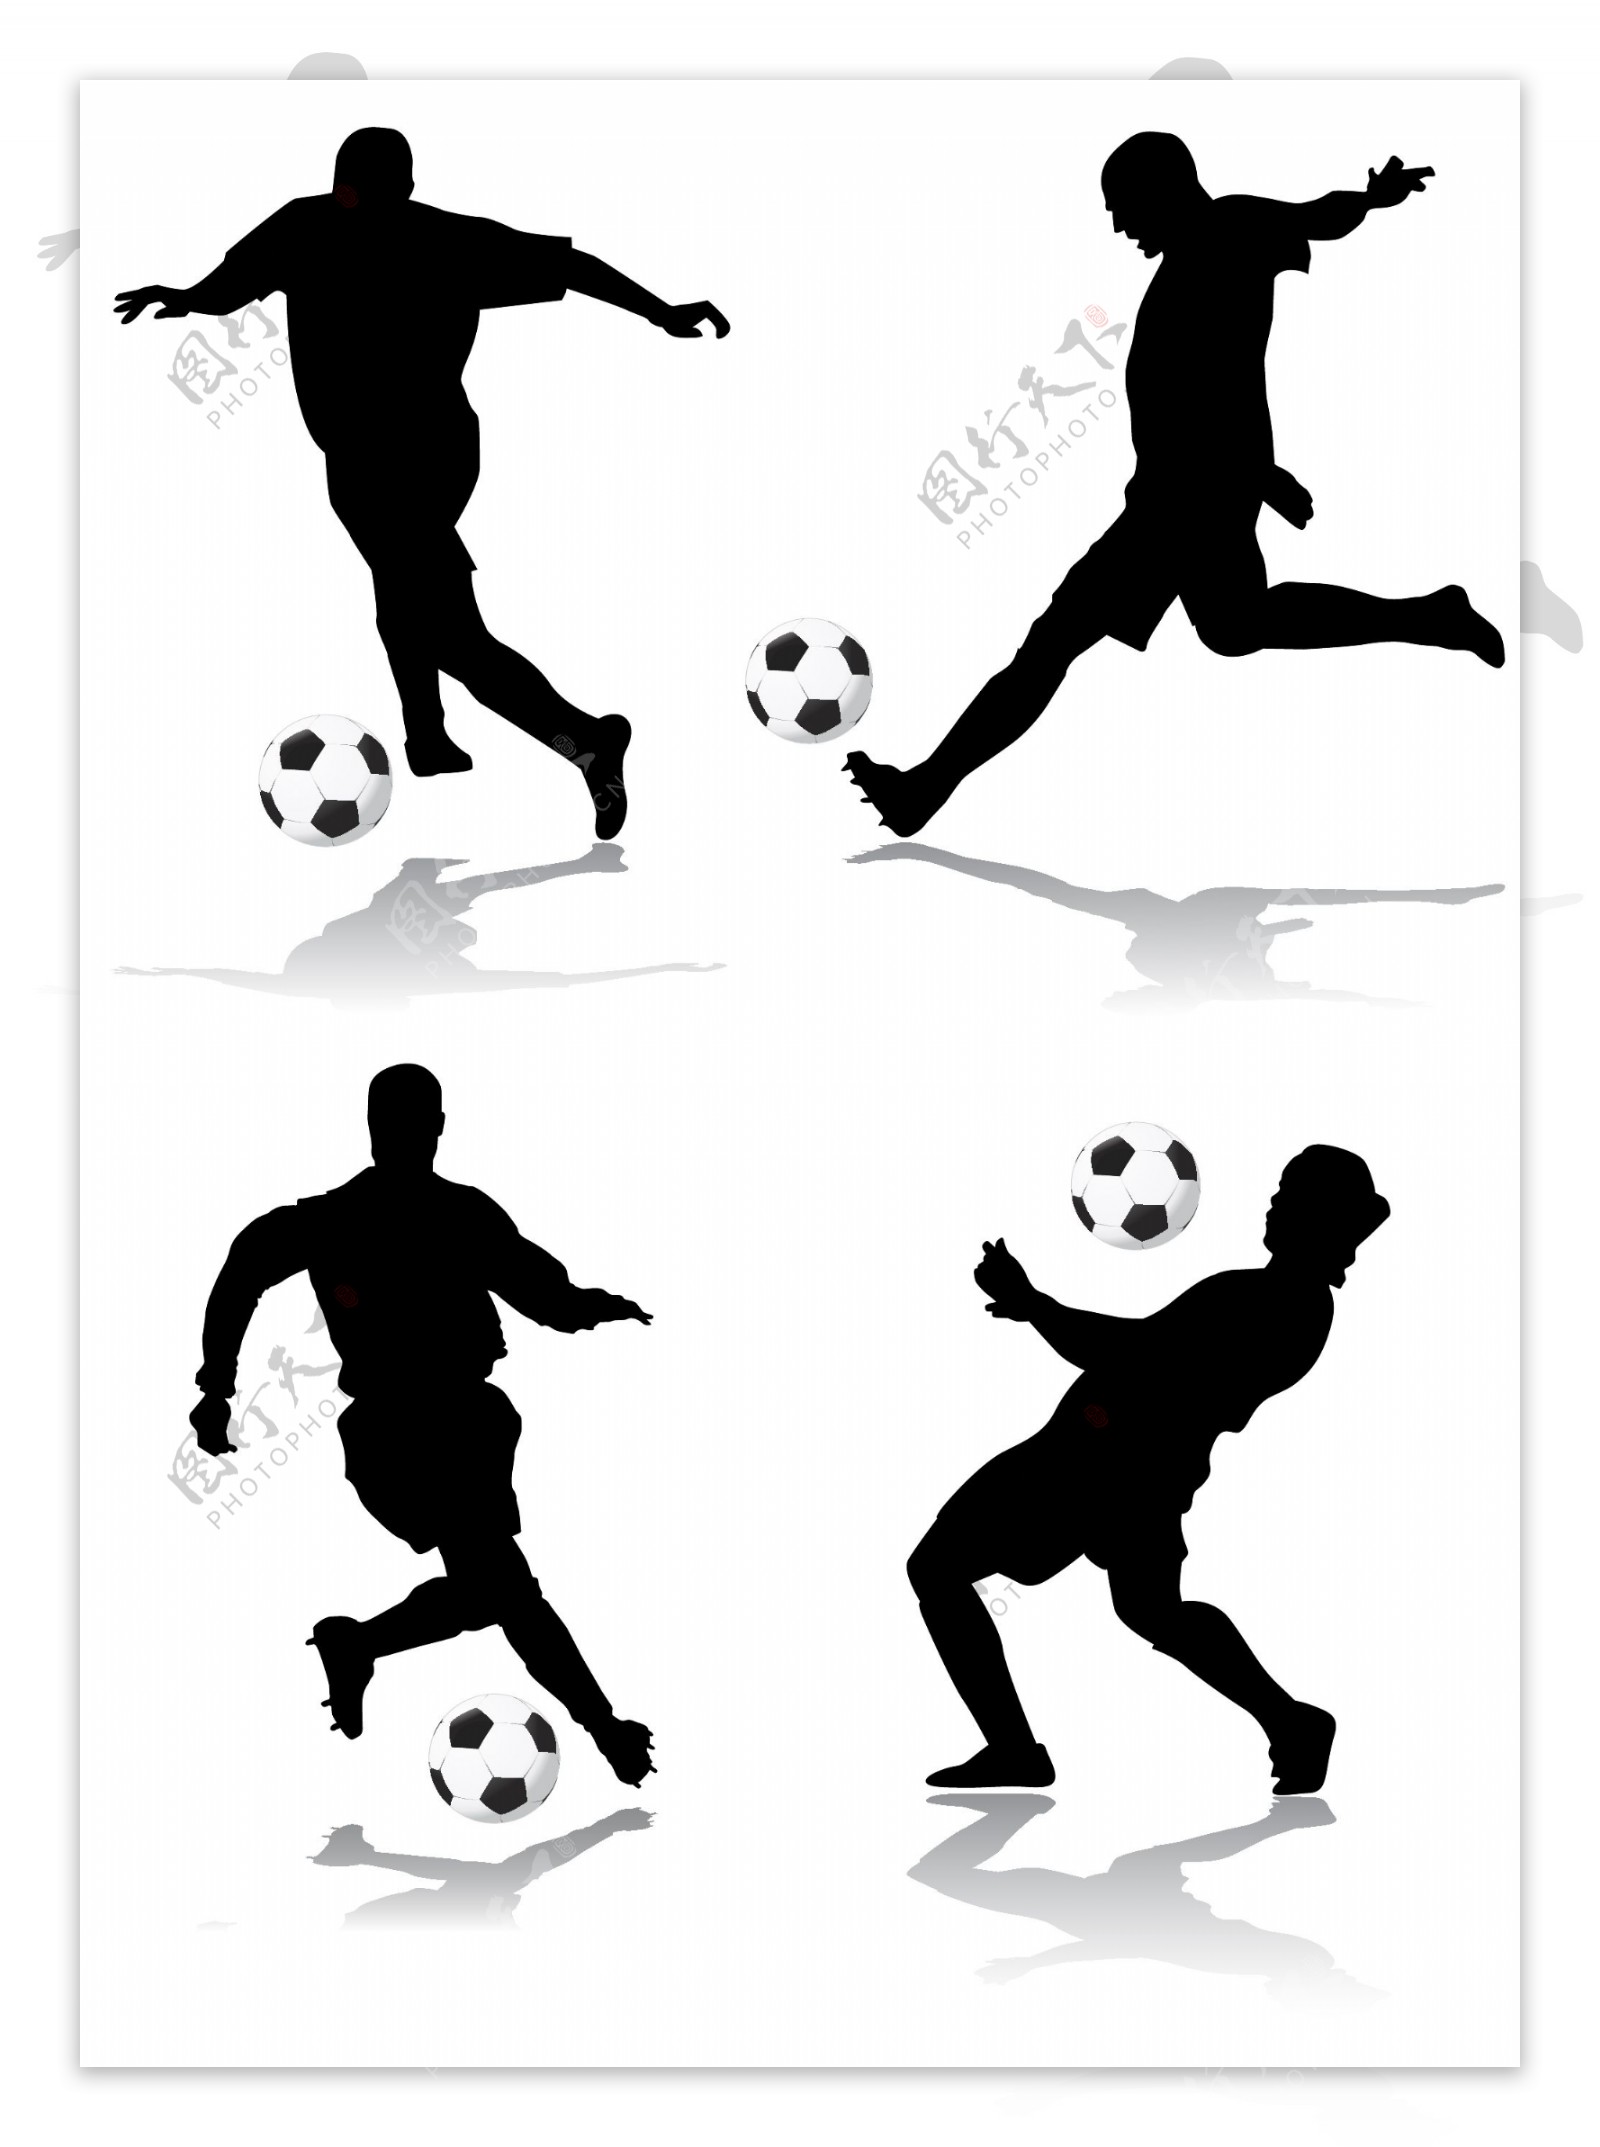 4款足球运球动作剪影矢量素材